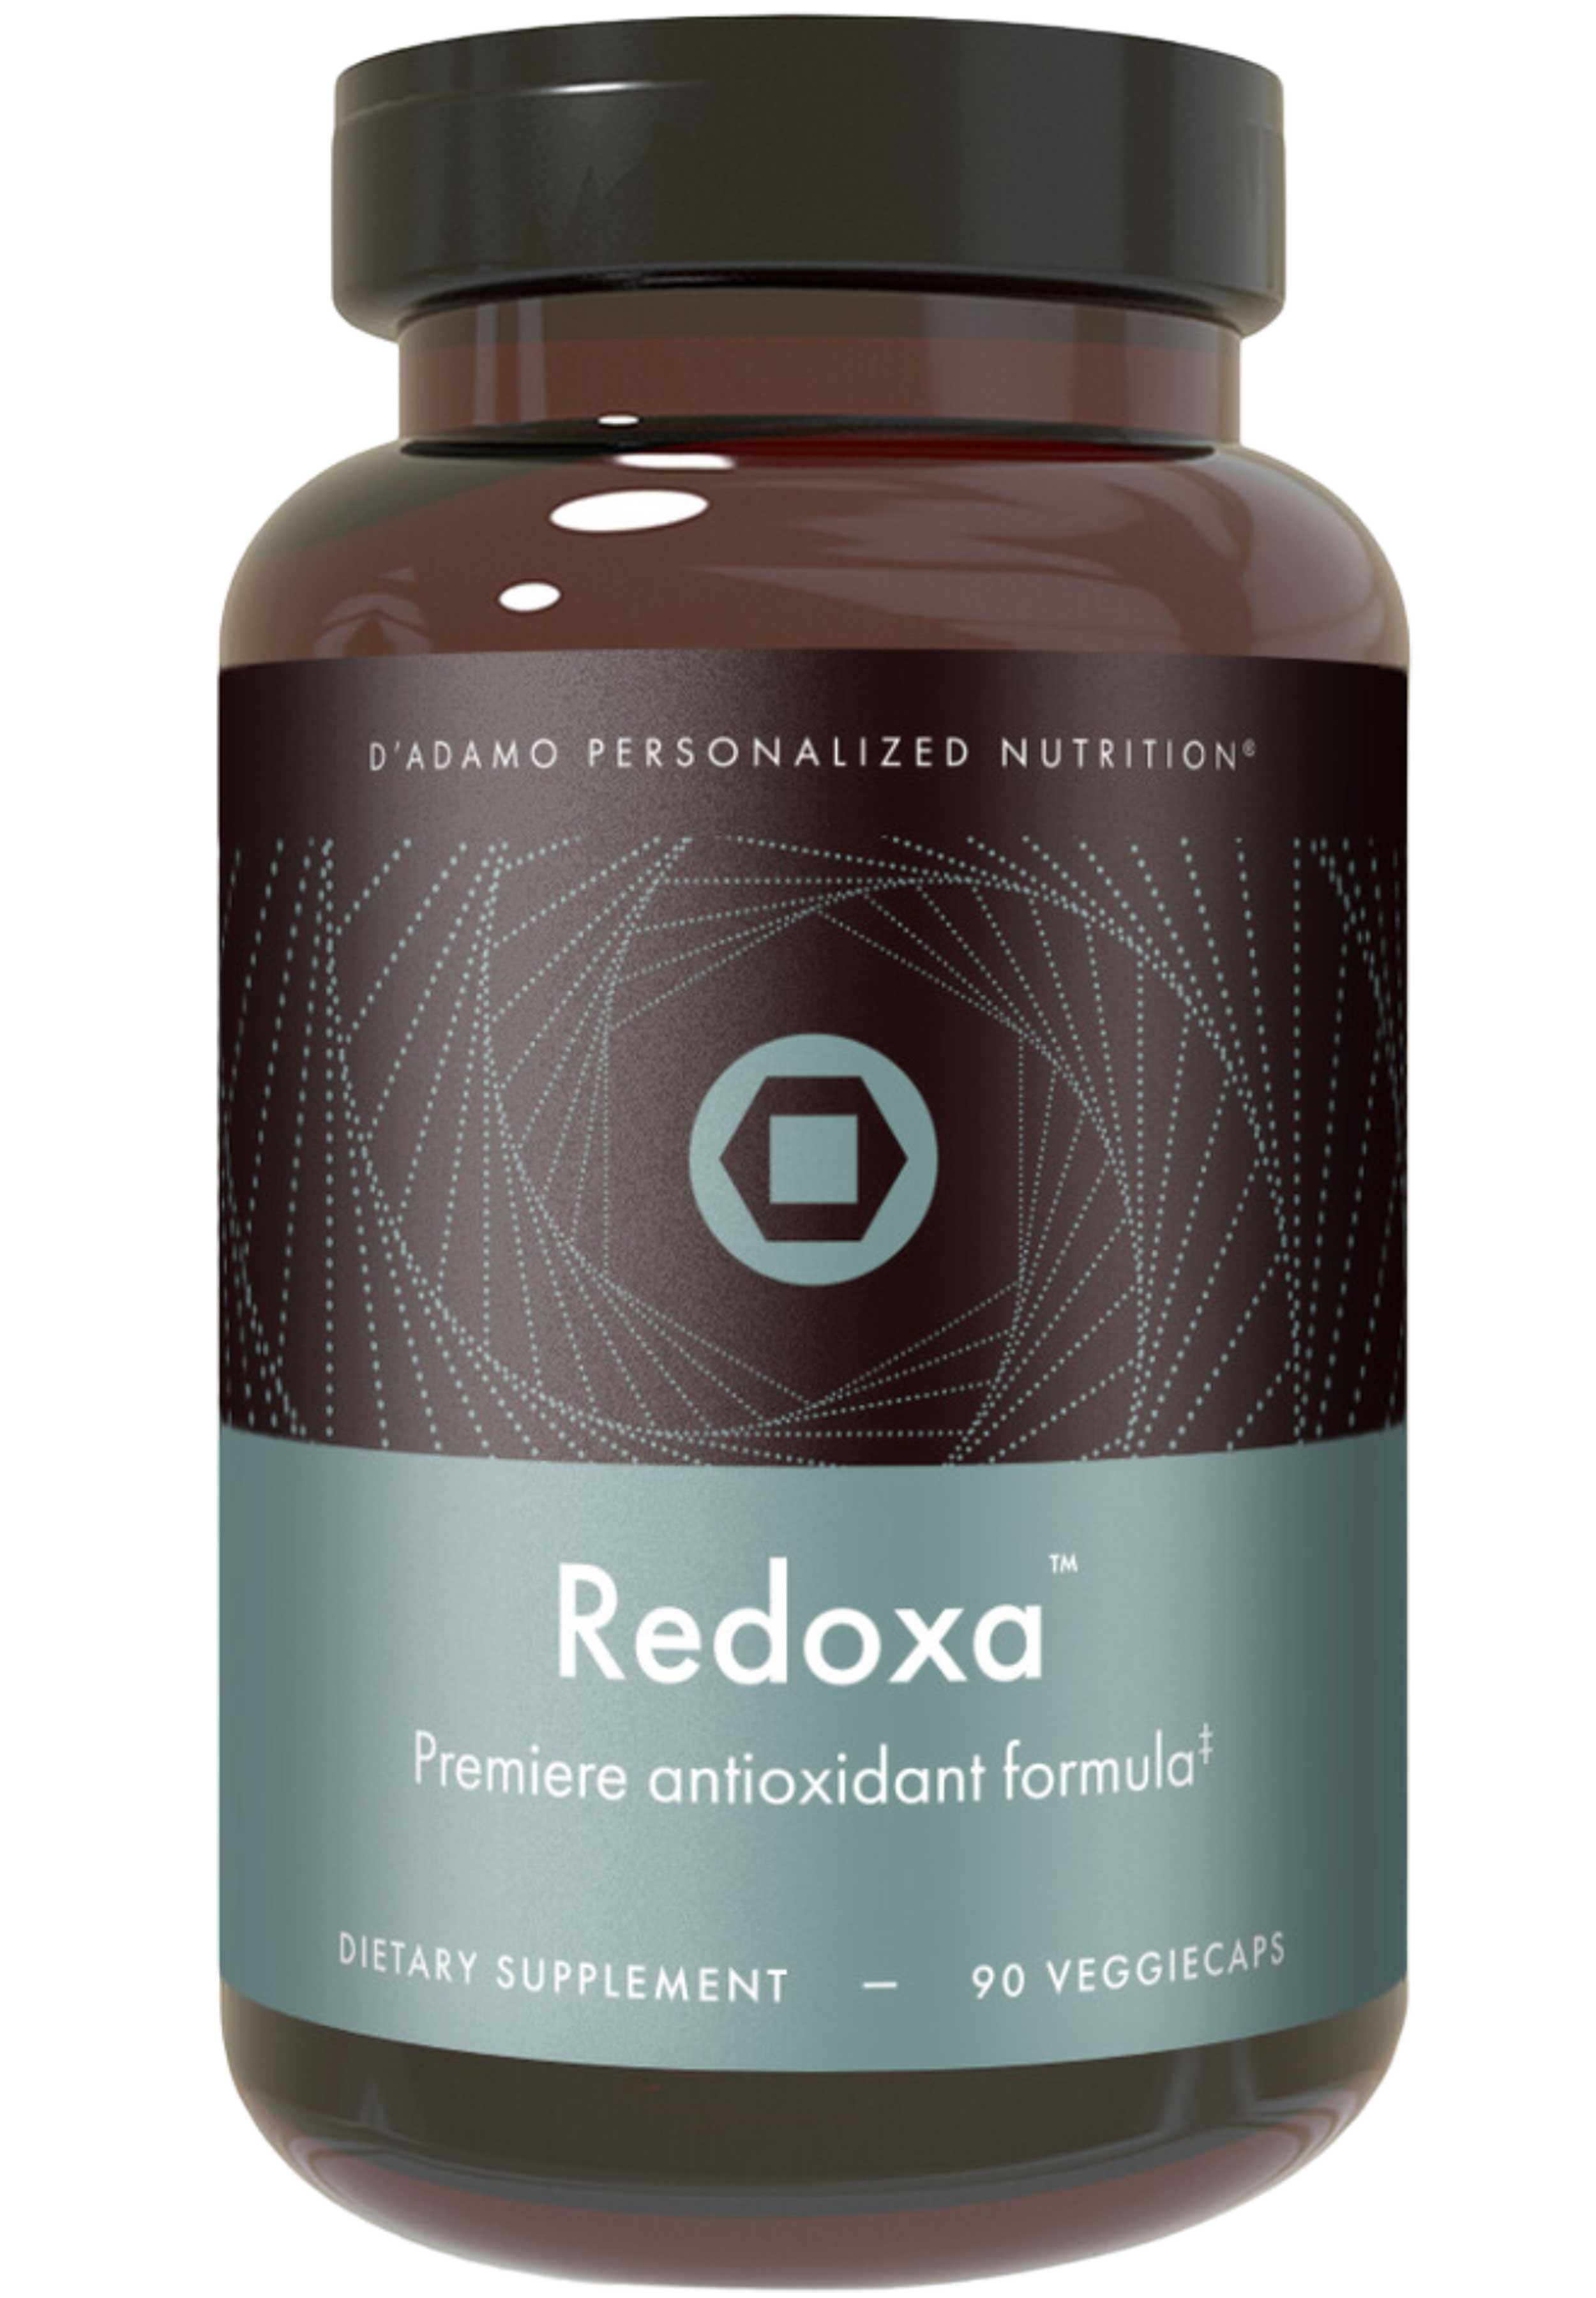 D'Adamo Personalized Nutrition Redoxa